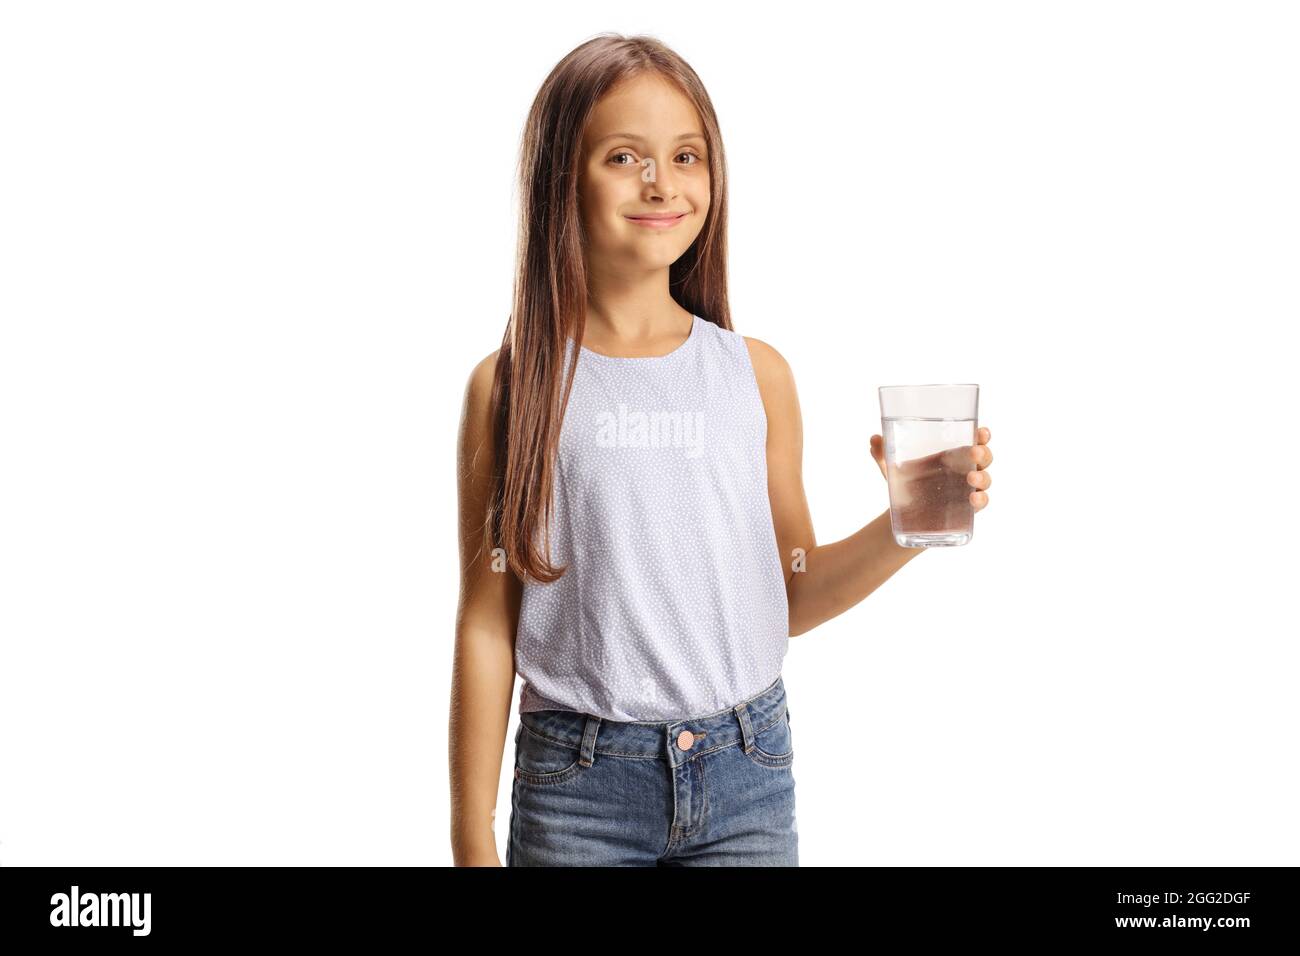 Fille tenant un verre d'eau isolé sur fond blanc Banque D'Images